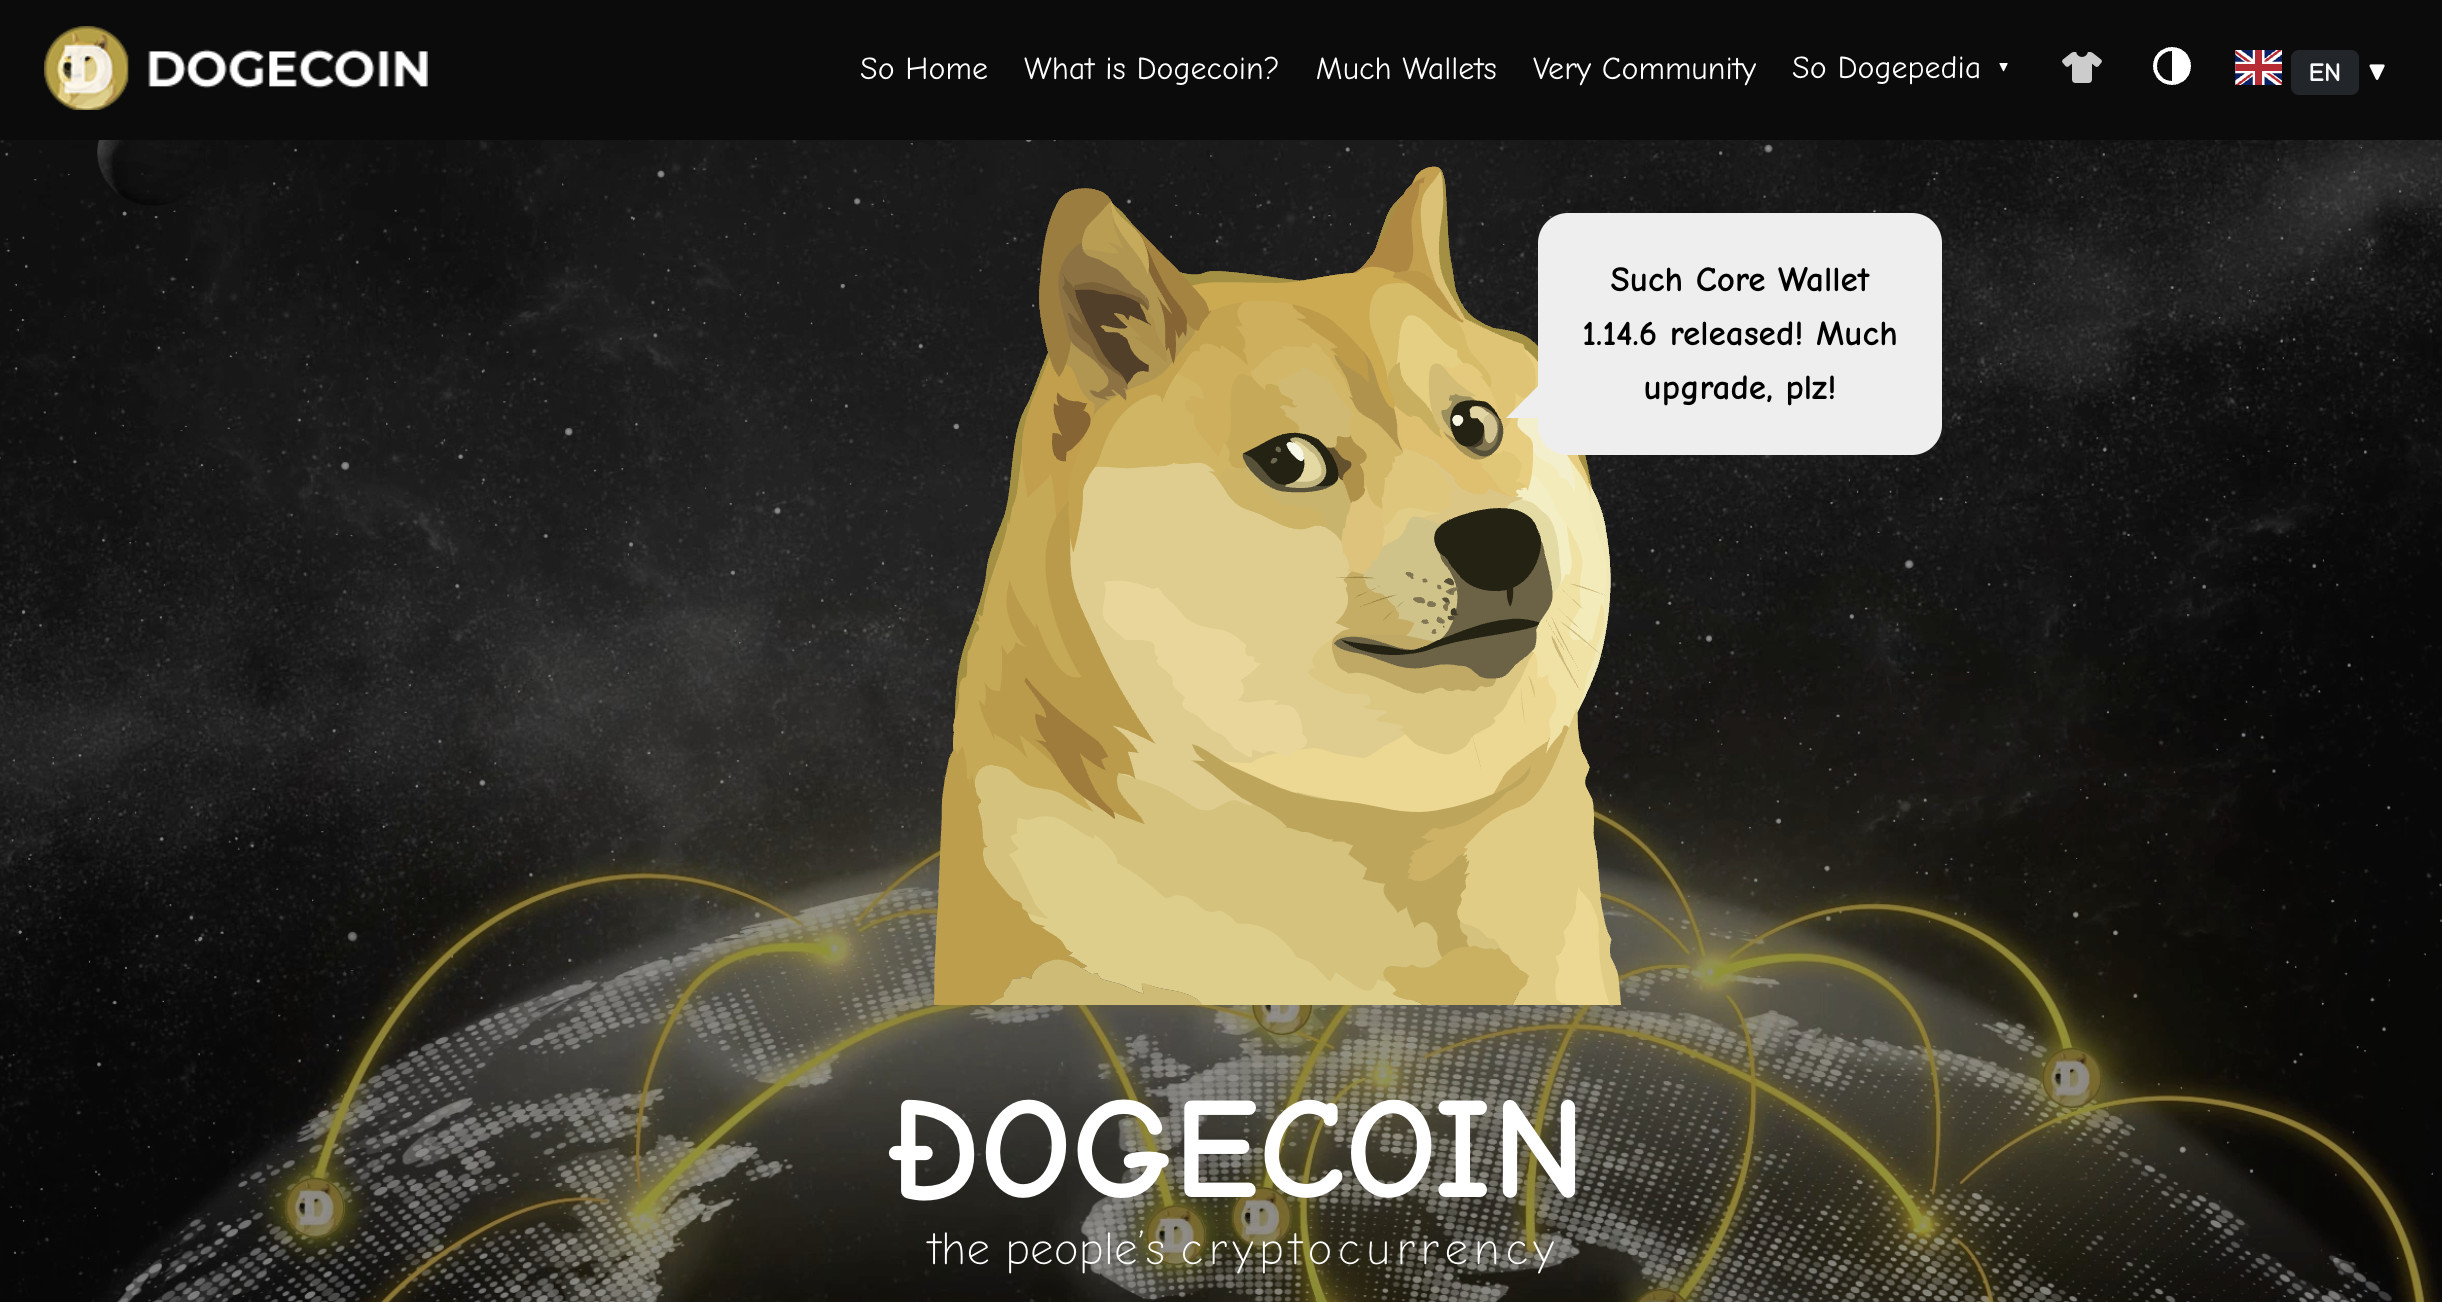 Dogecoin.com